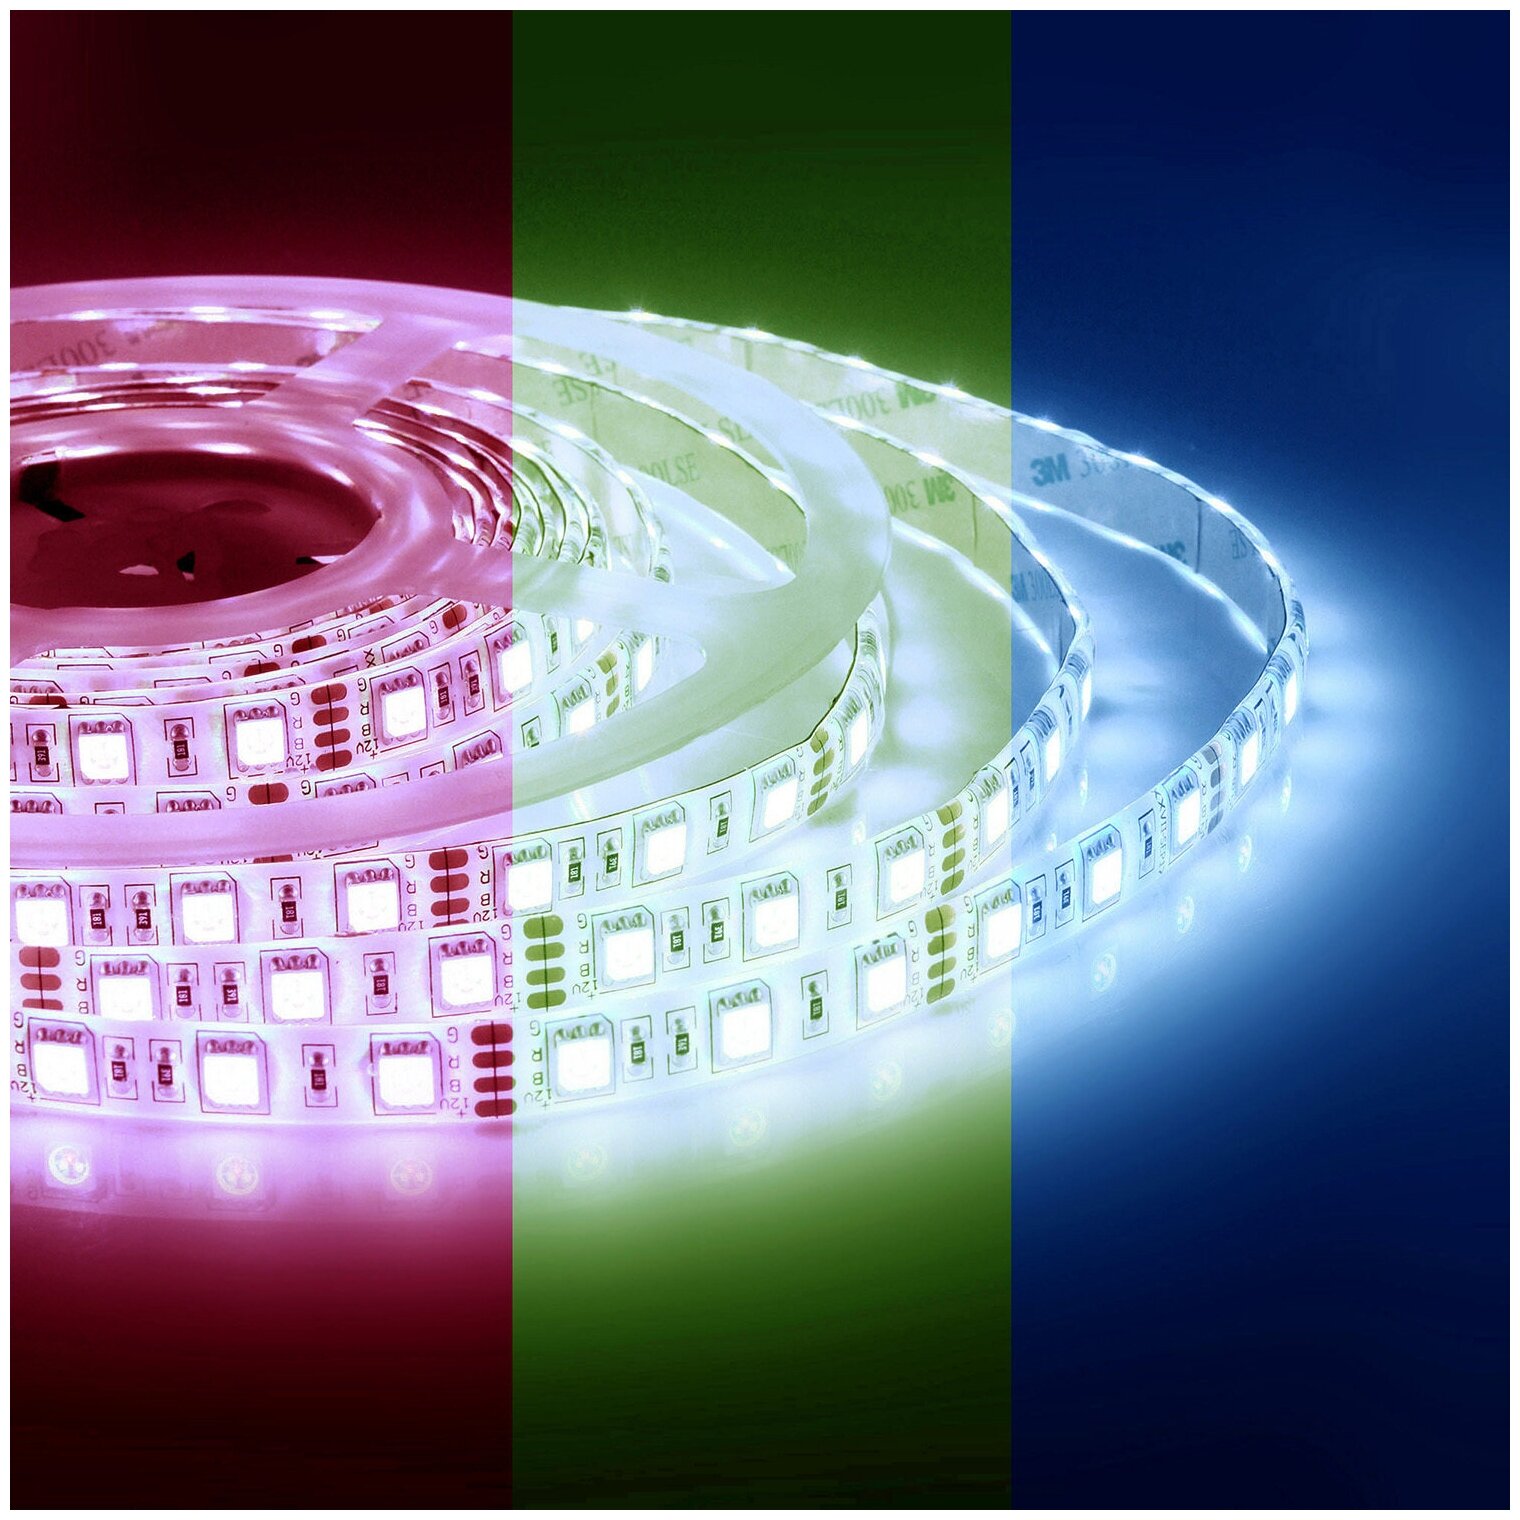 Яркая светодиодная многоцветная лента 00-17-1 с напряжением 12В / RGB лента подойдет для оформления внутри помещения, 60 диодов на метр / 14,4Вт/м / smd5050 / IP20 / ширина подложки 10 мм / длина 5 метров